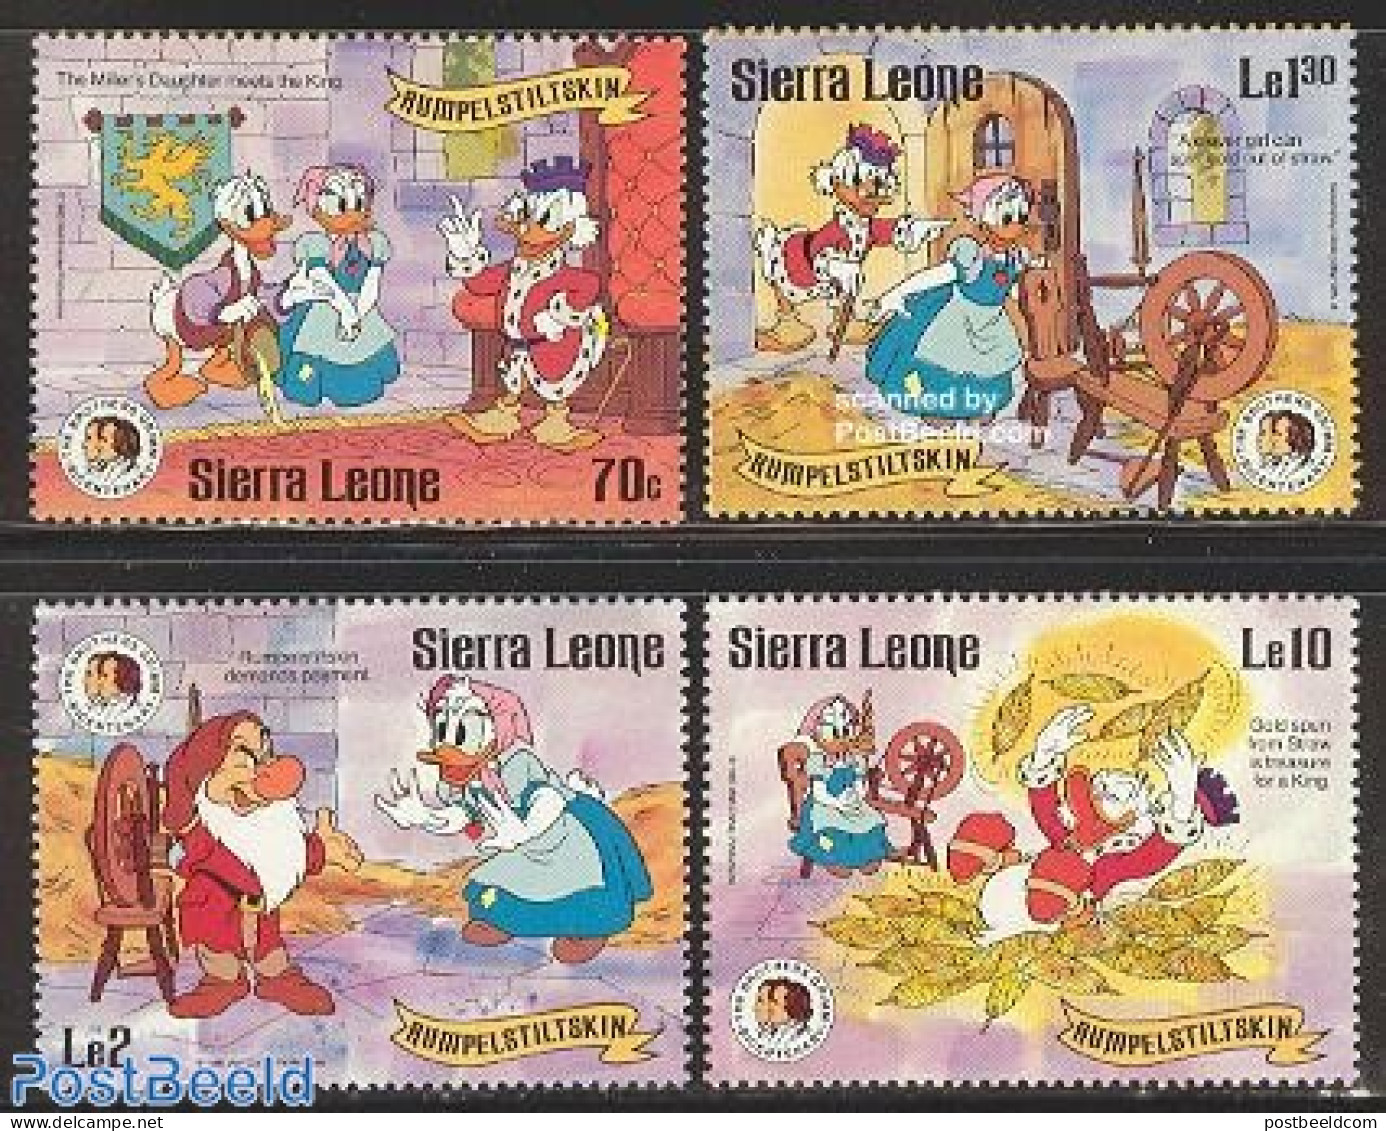 Sierra Leone 1985 Grimm Brothers, Disney 4v, Mint NH, Various - Textiles - Art - Disney - Fairytales - Textiles